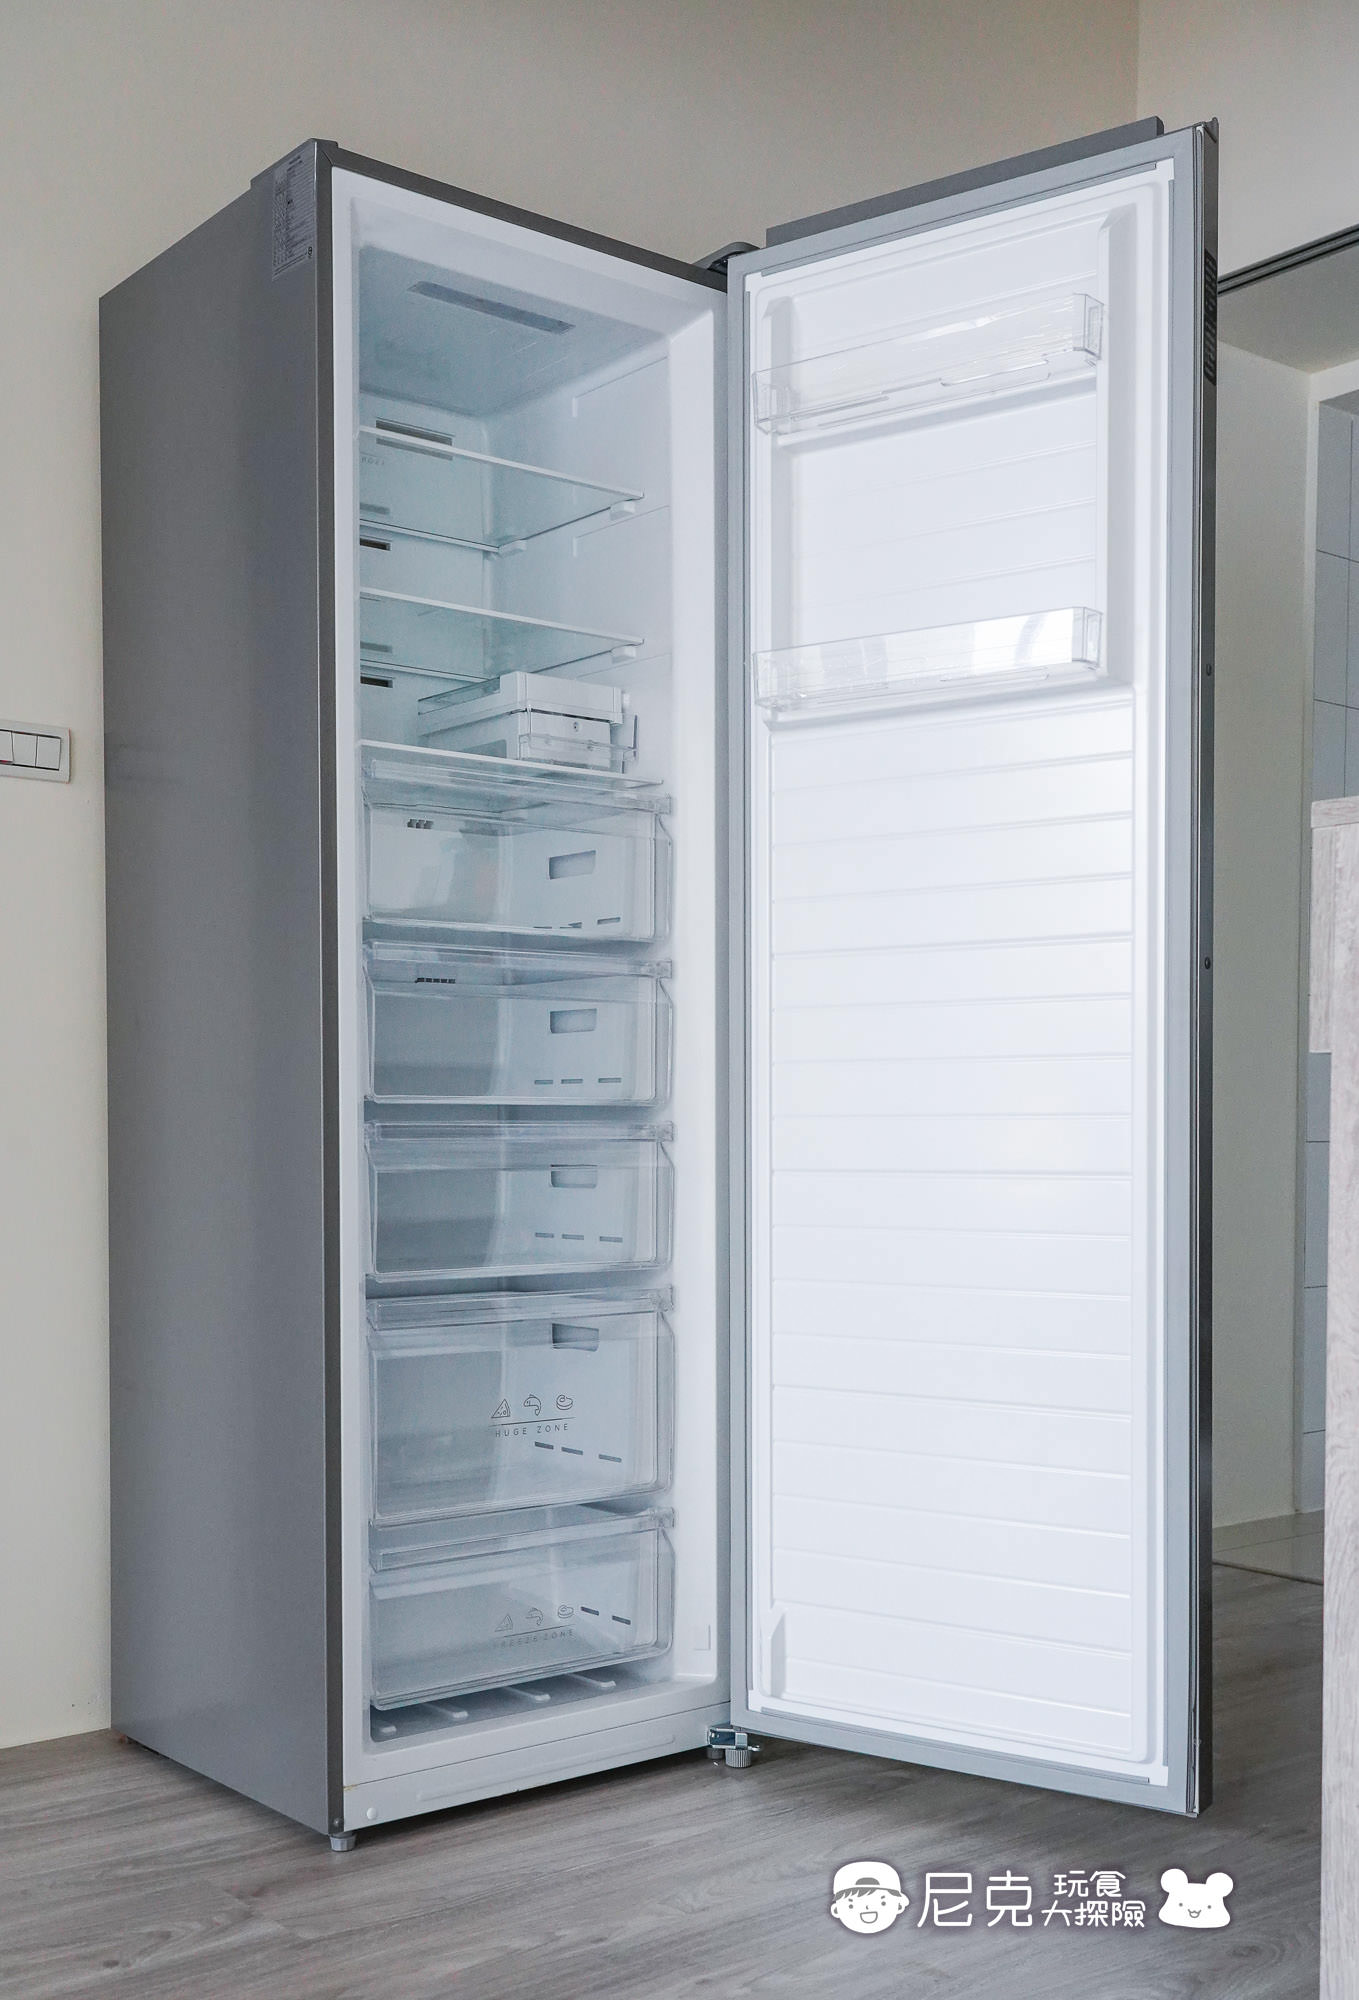 冷凍櫃團購 06981